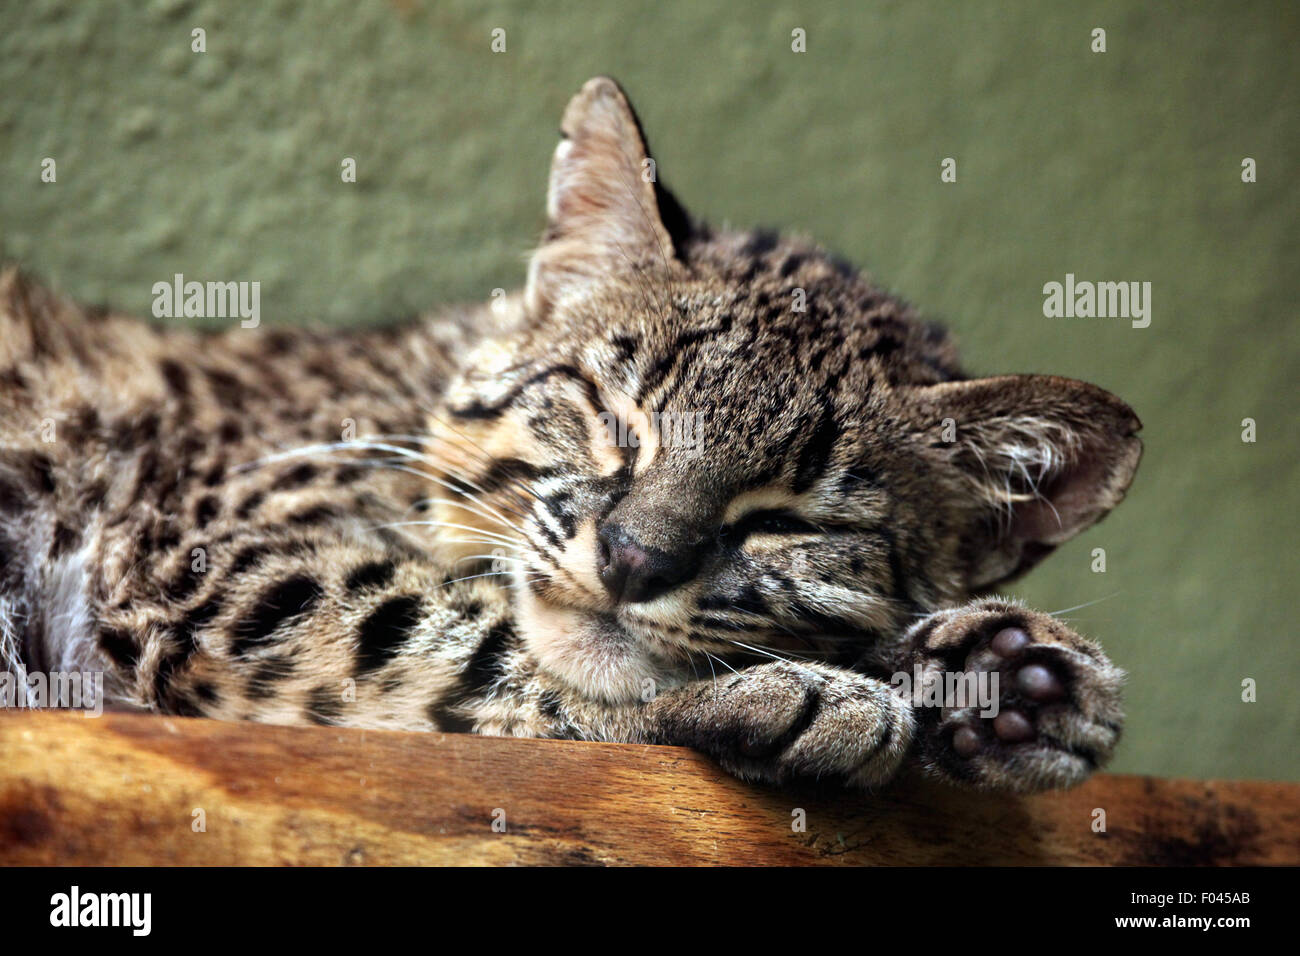 Geoffroy's cat (Leopardus geoffroyi) at Jihlava Zoo in Jihlava, East Bohemia, Czech Republic. Stock Photo